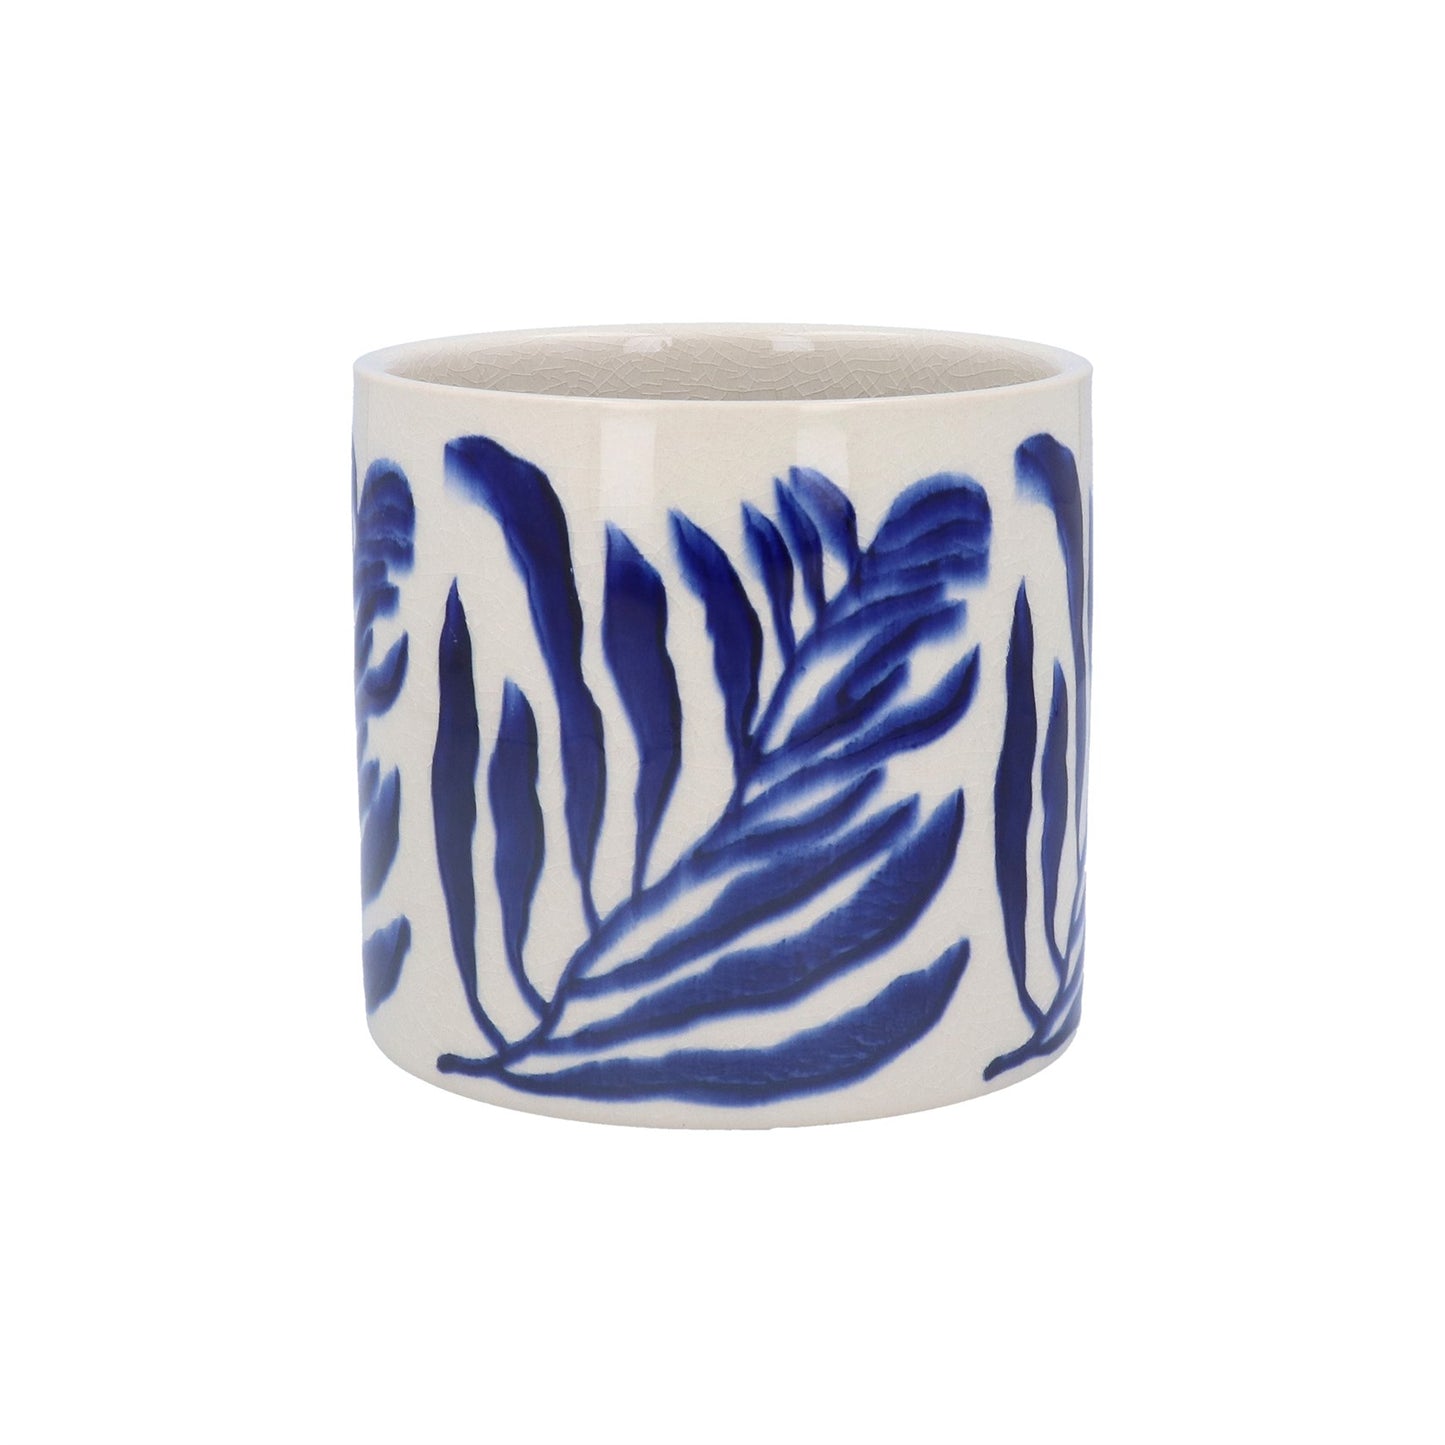 Blue Branch Ceramic Pot Cover  - Small